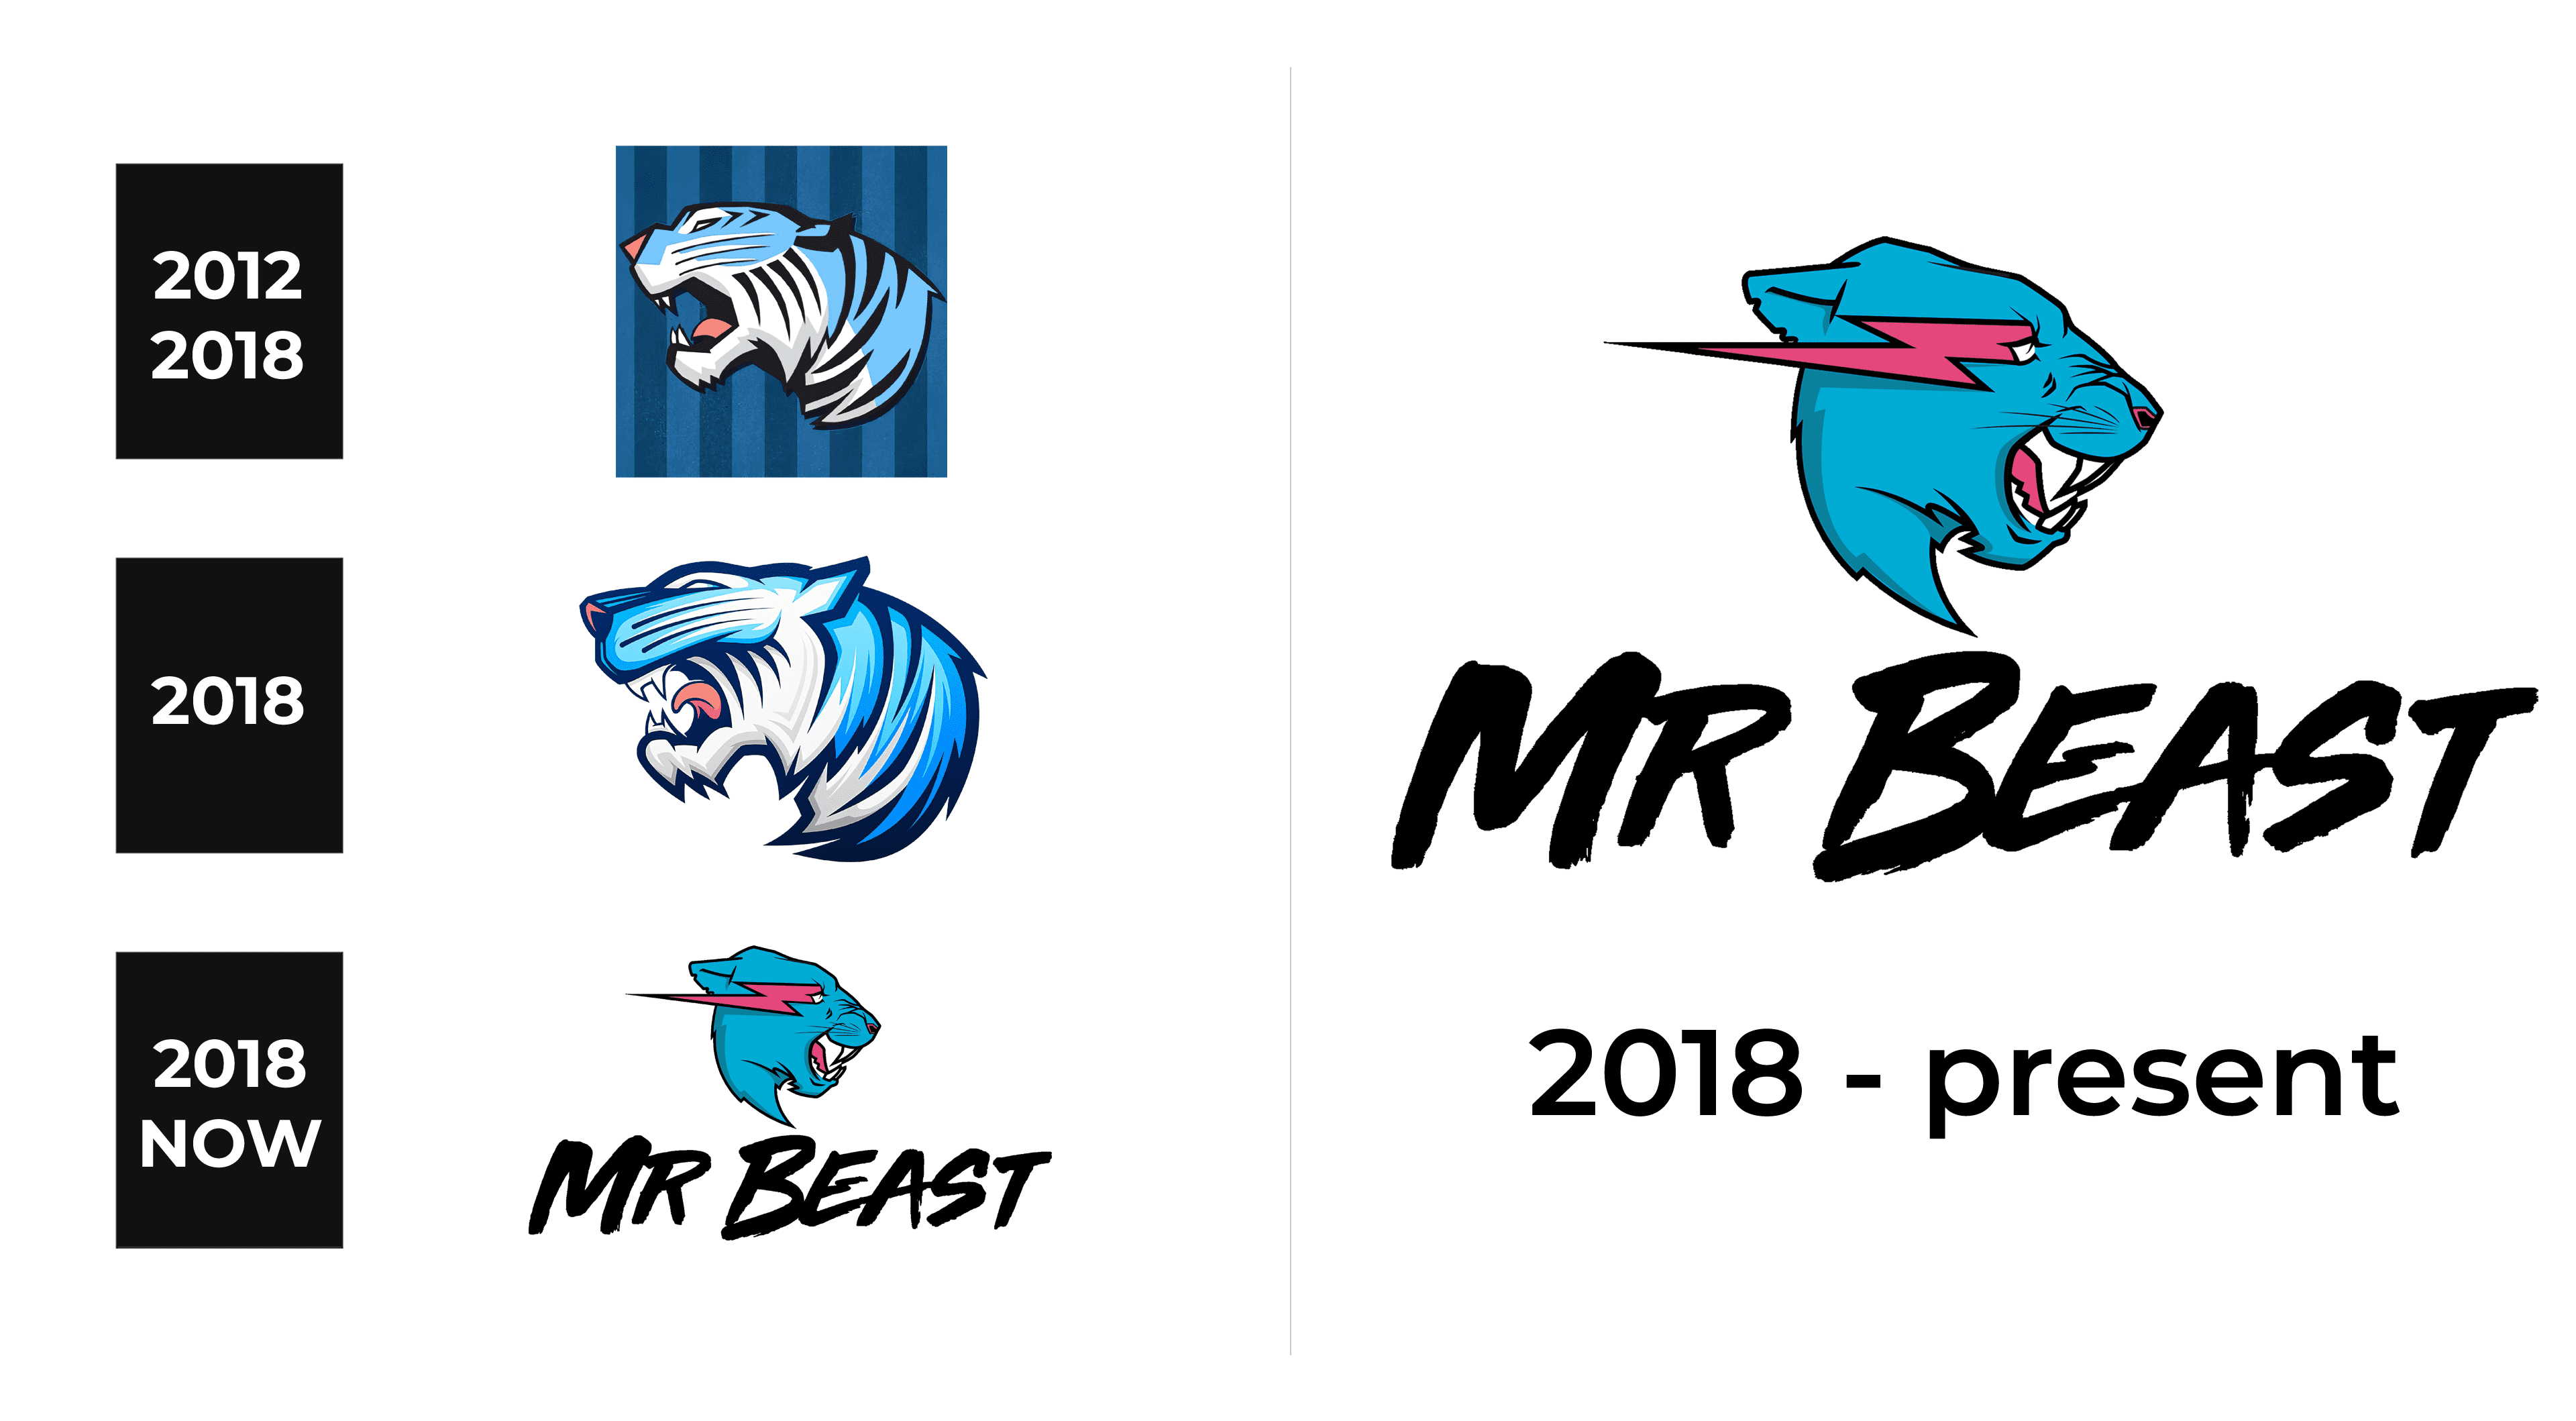 Shark Beast Logo Mascot For Esport Template | PosterMyWall